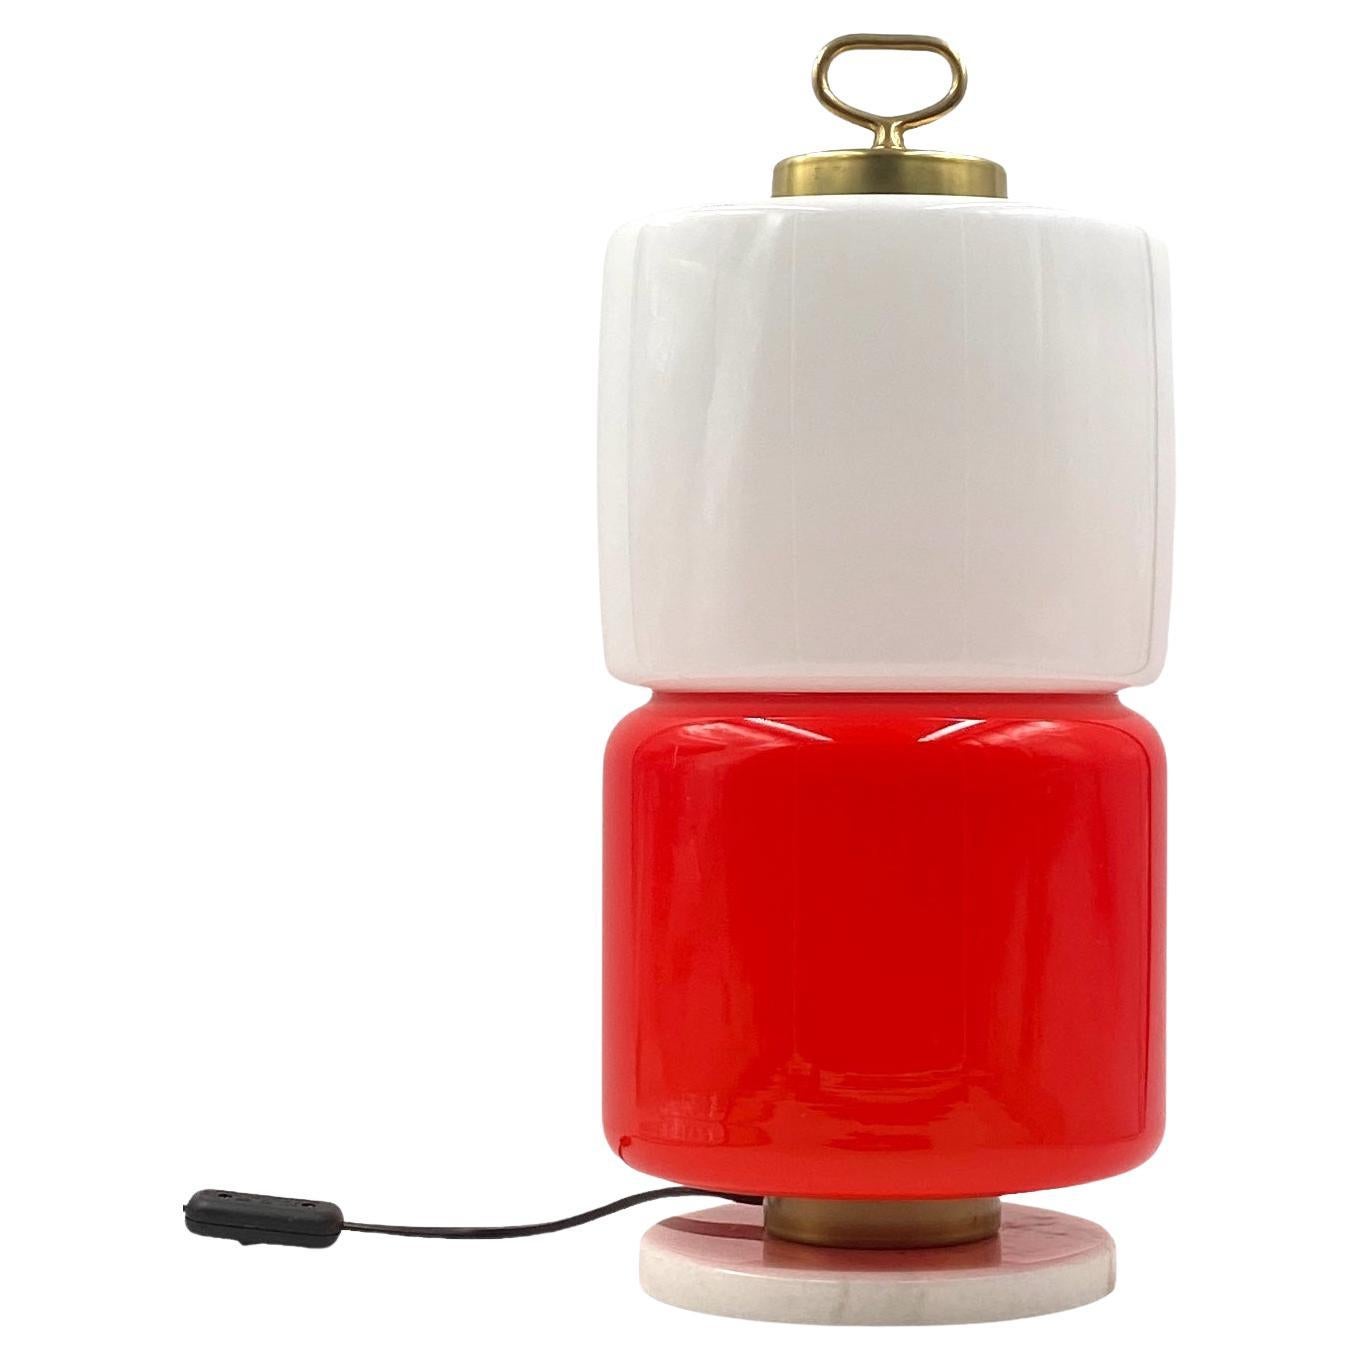 Space Age Lampe de table cylindrique en verre rouge et blanc, Stilnovo, 1970